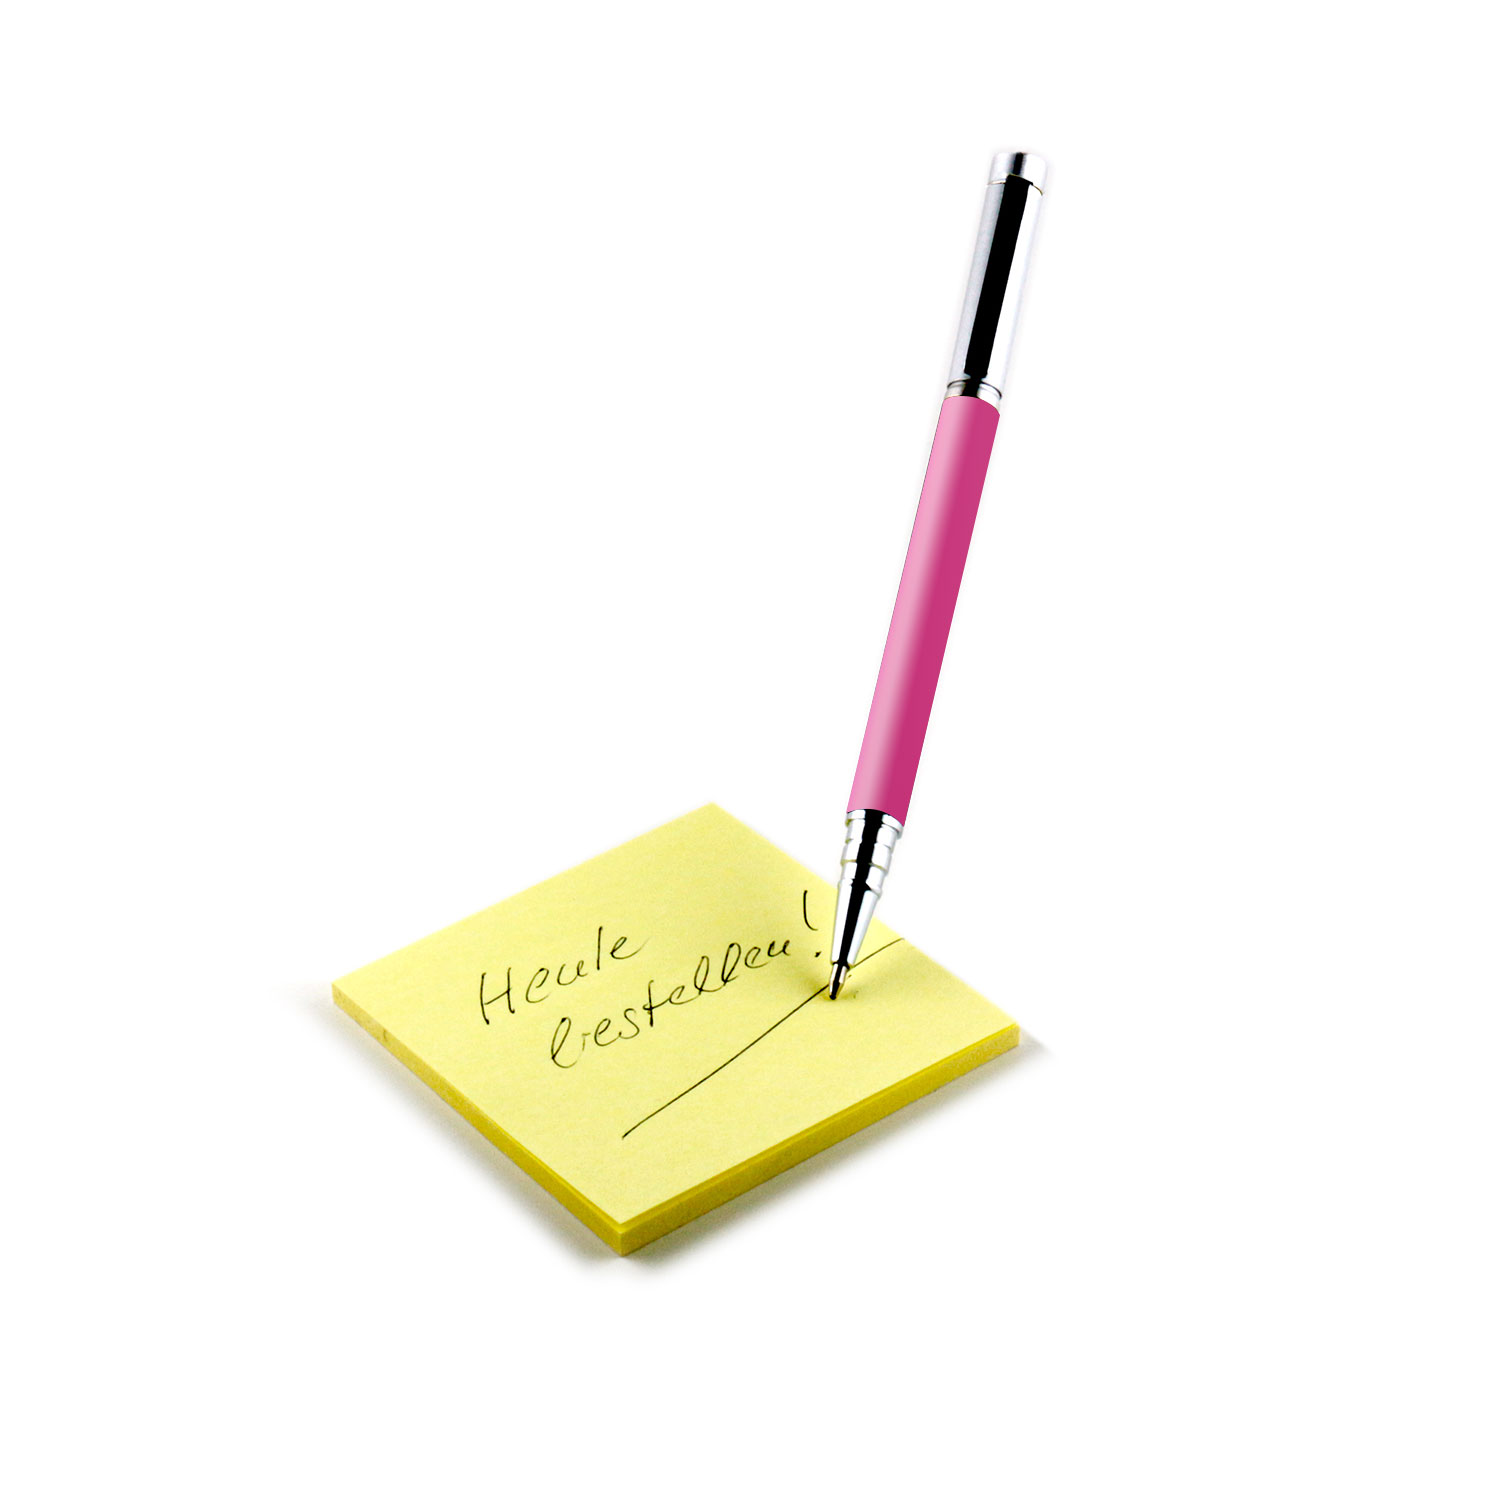 SLABO ergonomisch Kugelschreiber Silber Touchpen | Eingabestift Pink | 